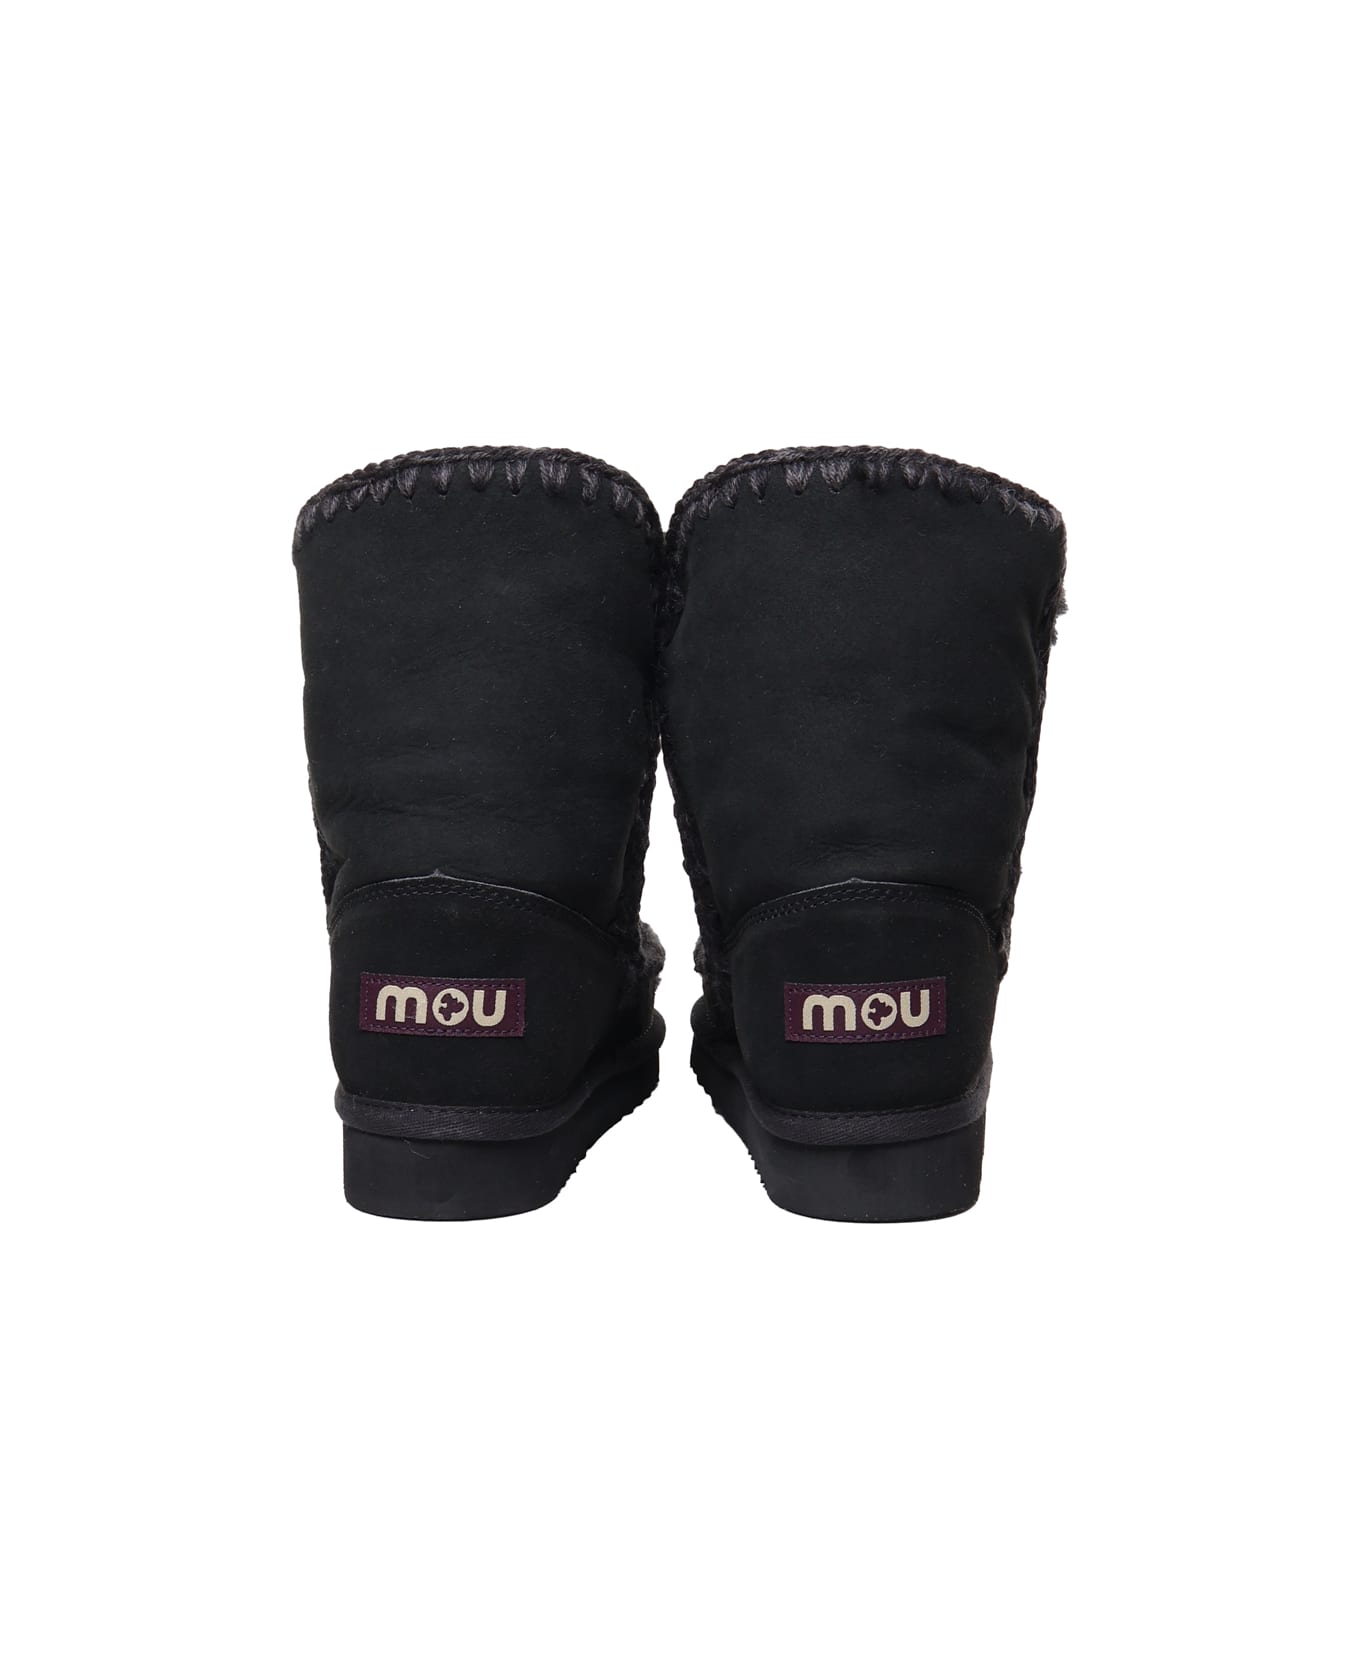 Mou Eskimo Dream Boots - Black ブーツ